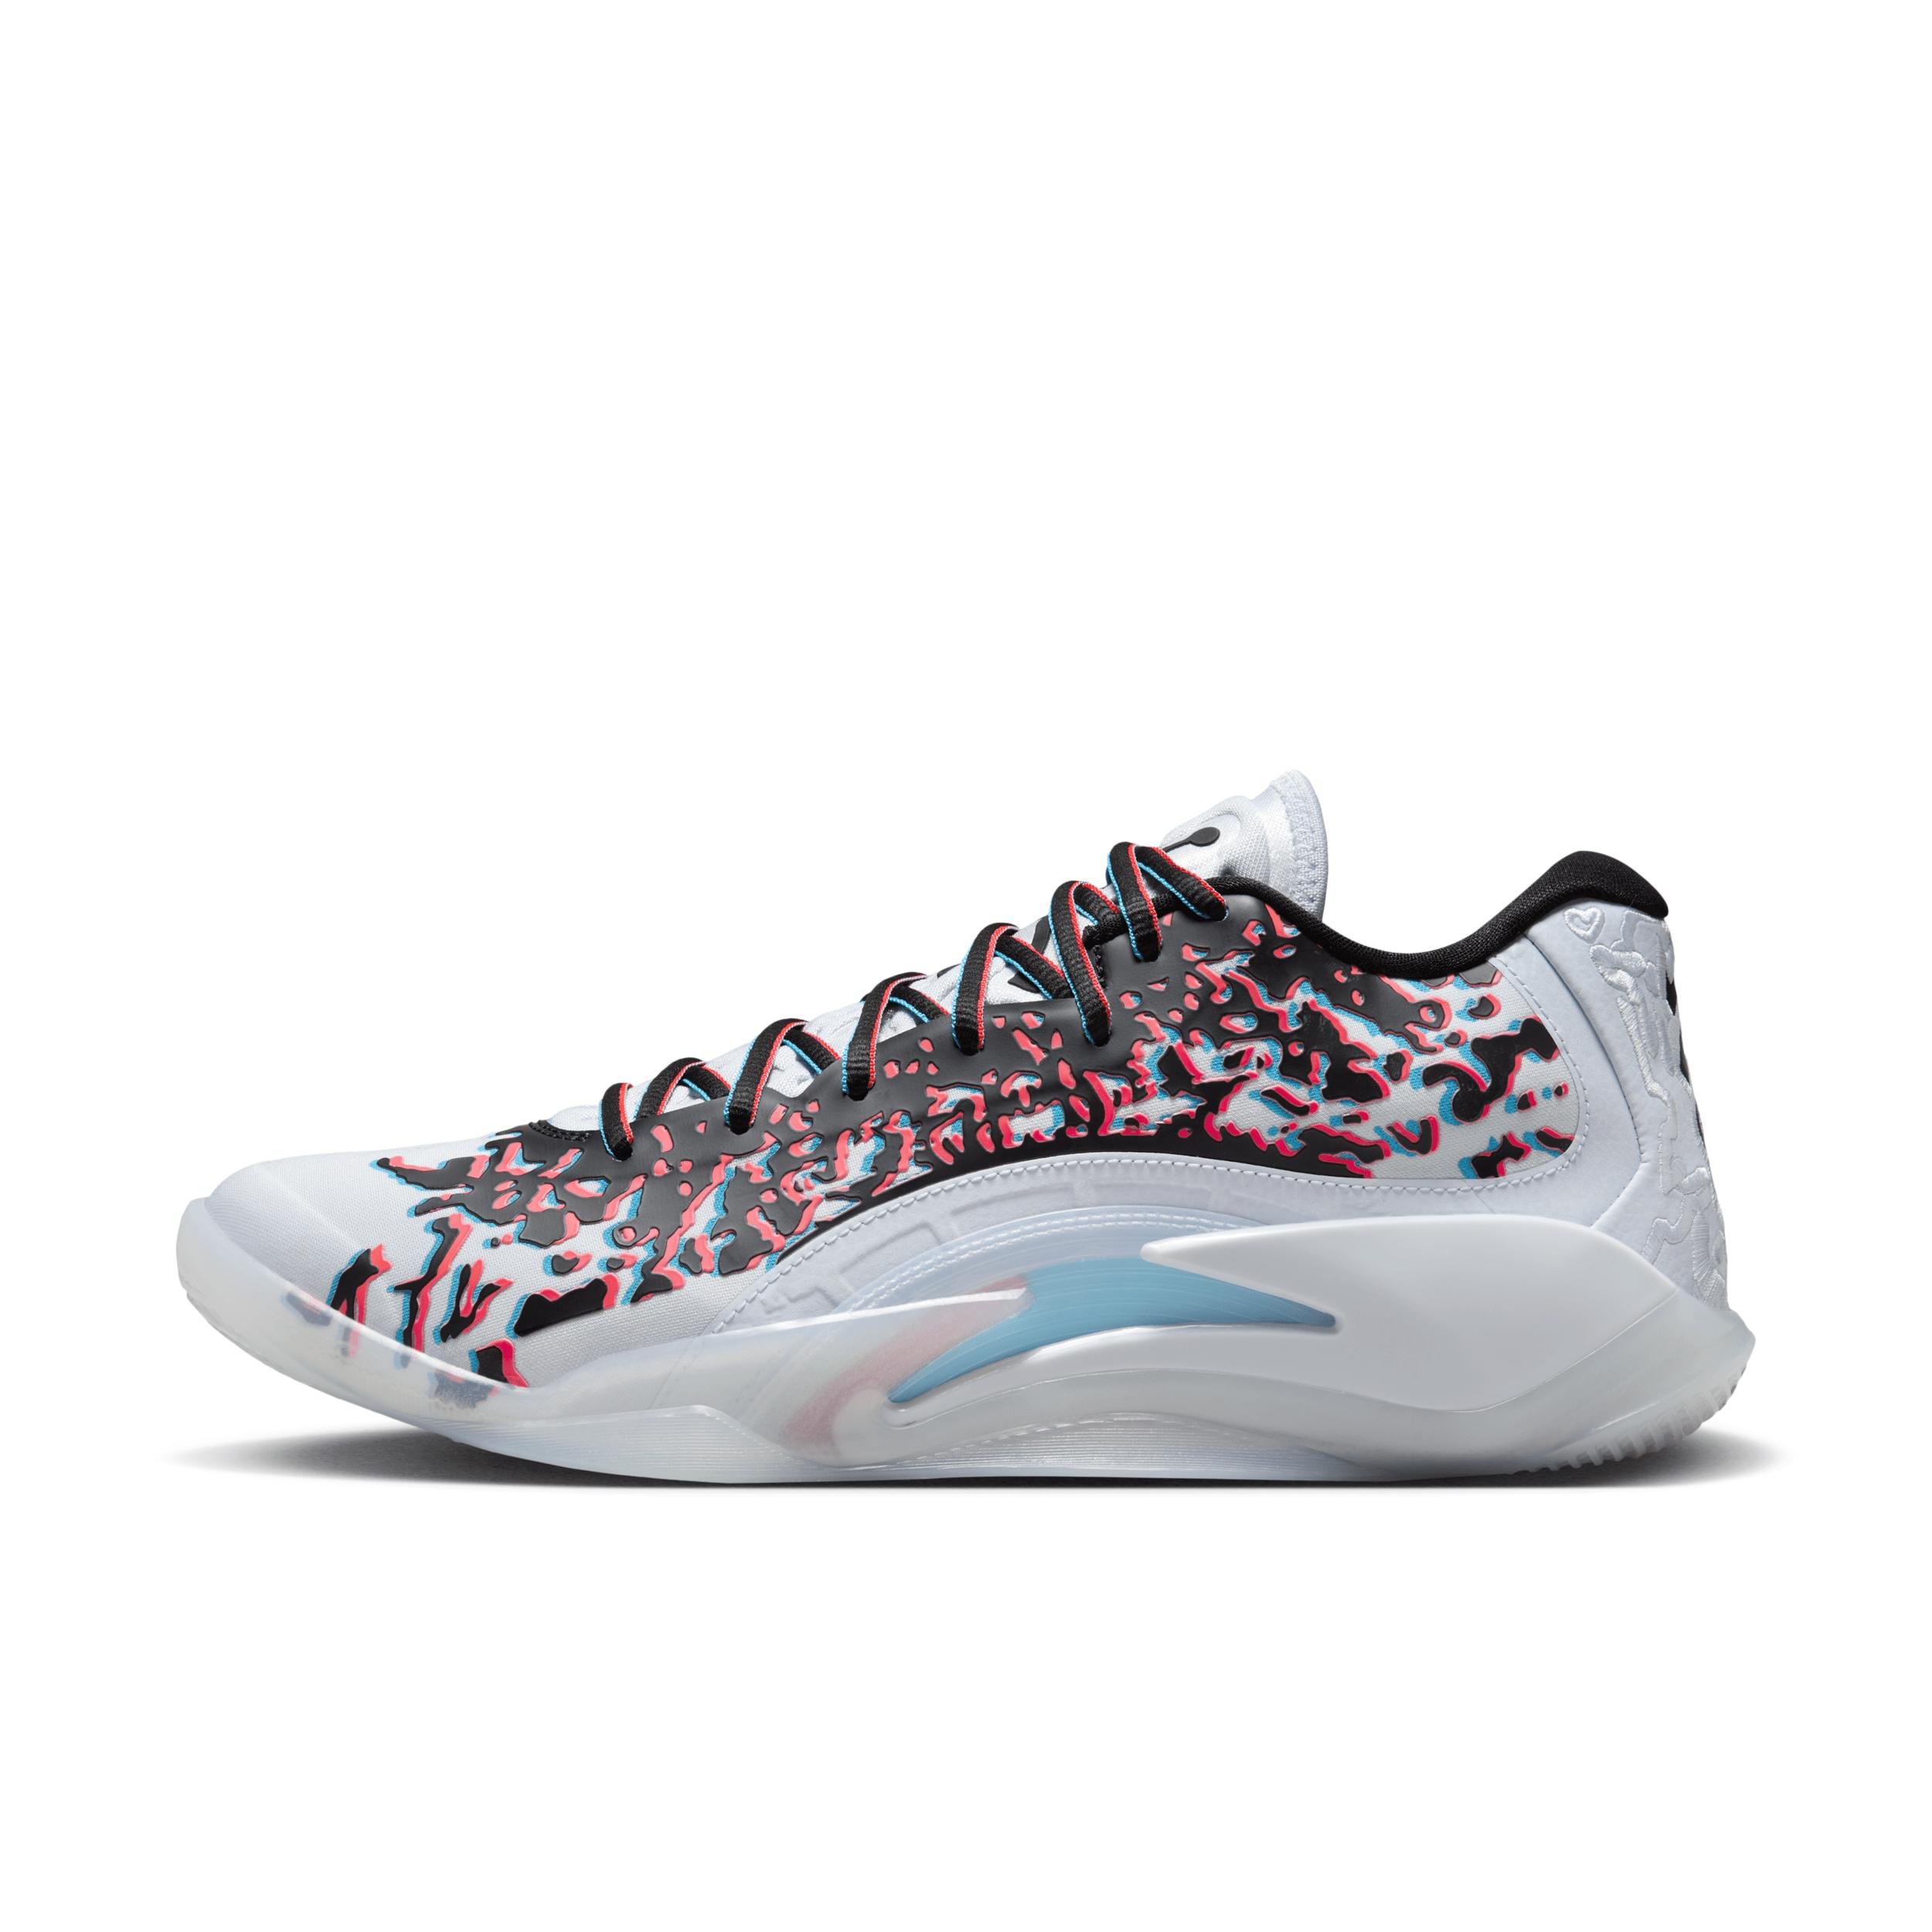 Nike Men's Zion 3 "Z-3D" Basketball Shoes by JORDAN